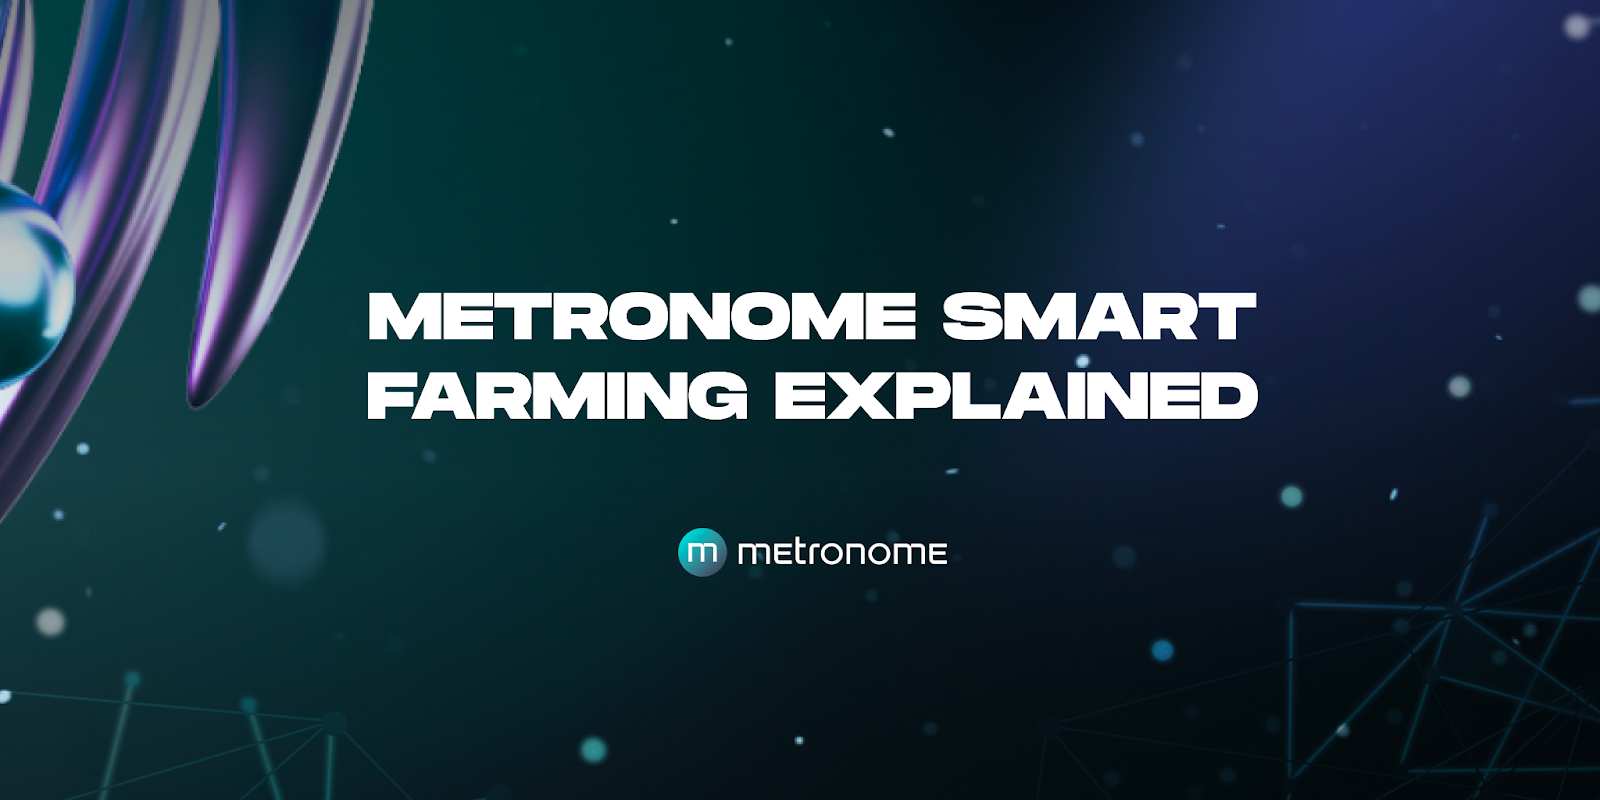 metronome smart farming explained